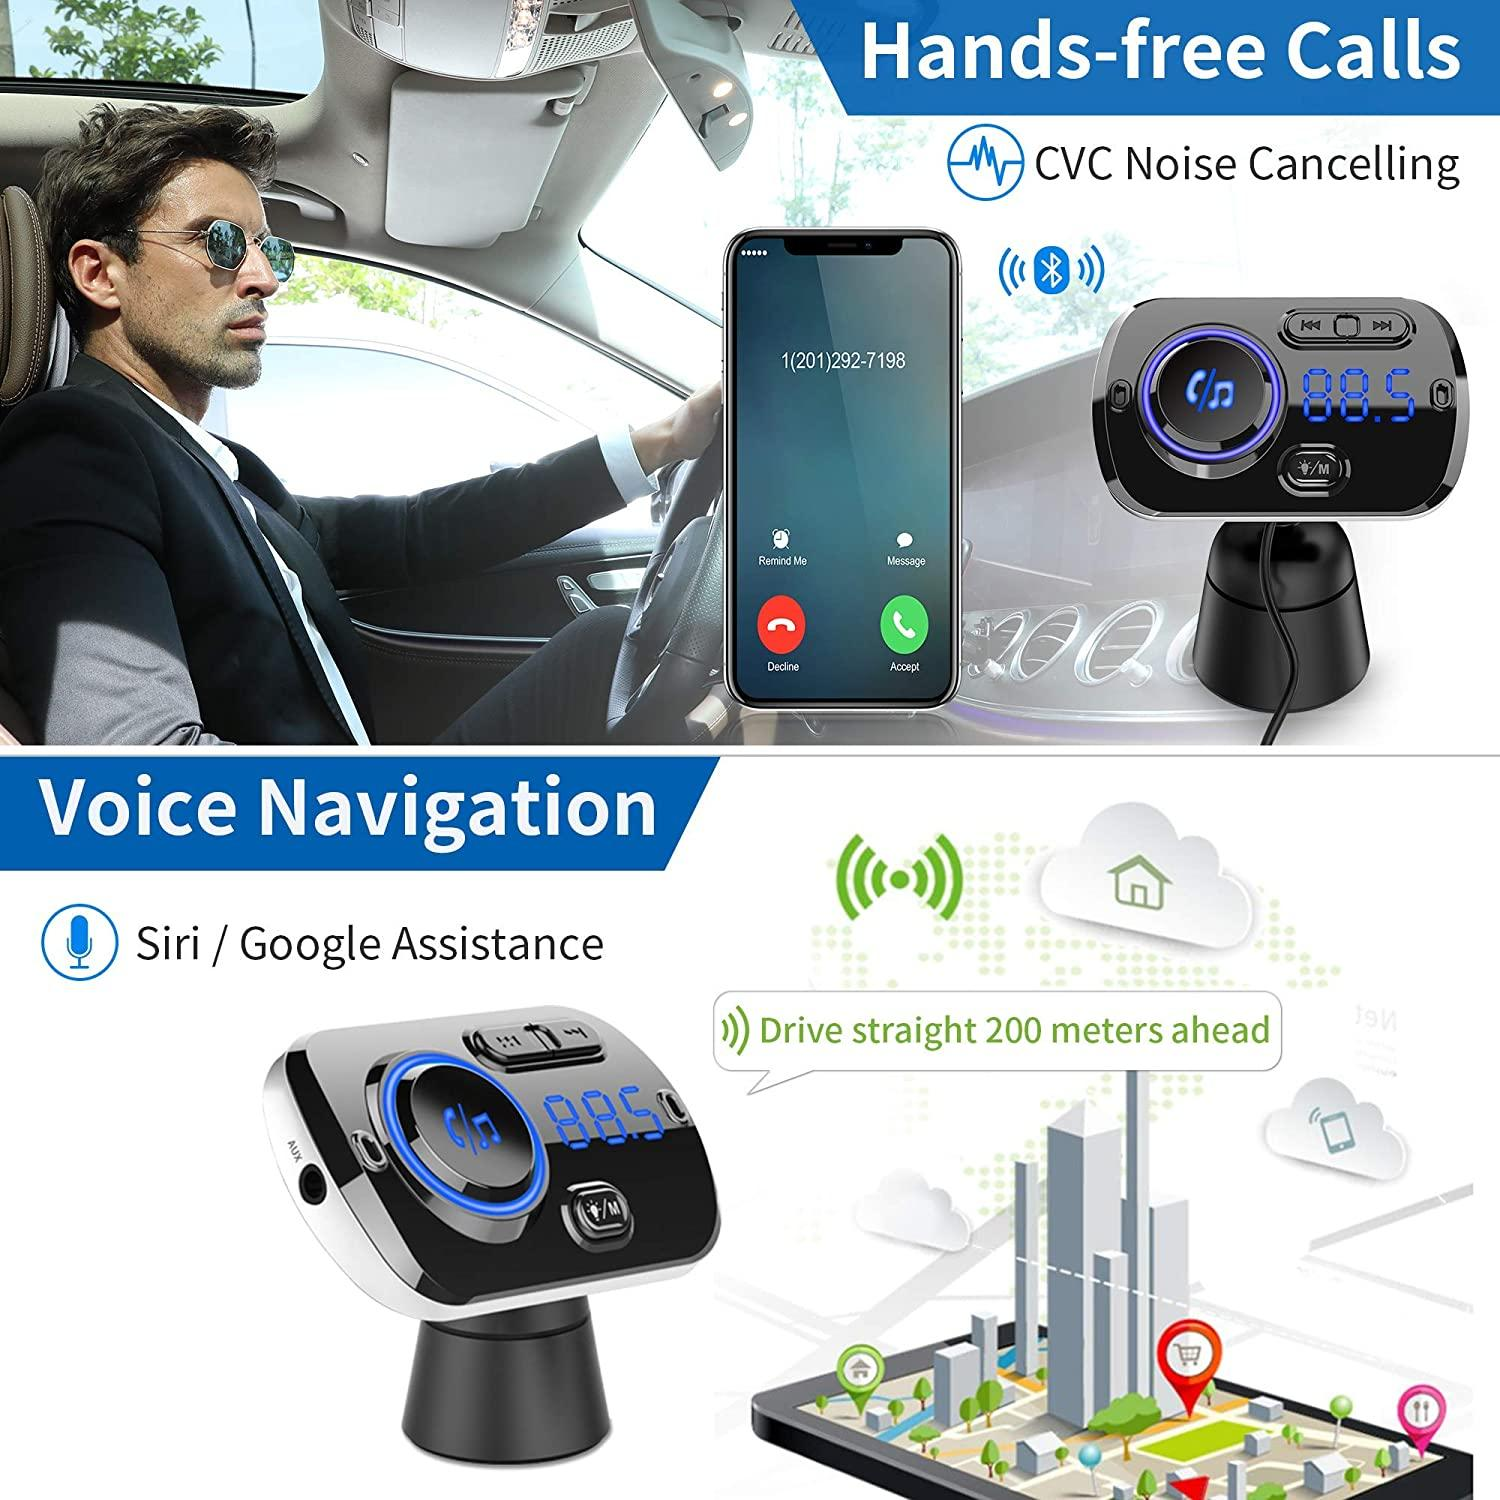 FM-Sender Adapter - FM-Transmitter Auto Ladegerät mit Bluetooth INF für Kabelloser